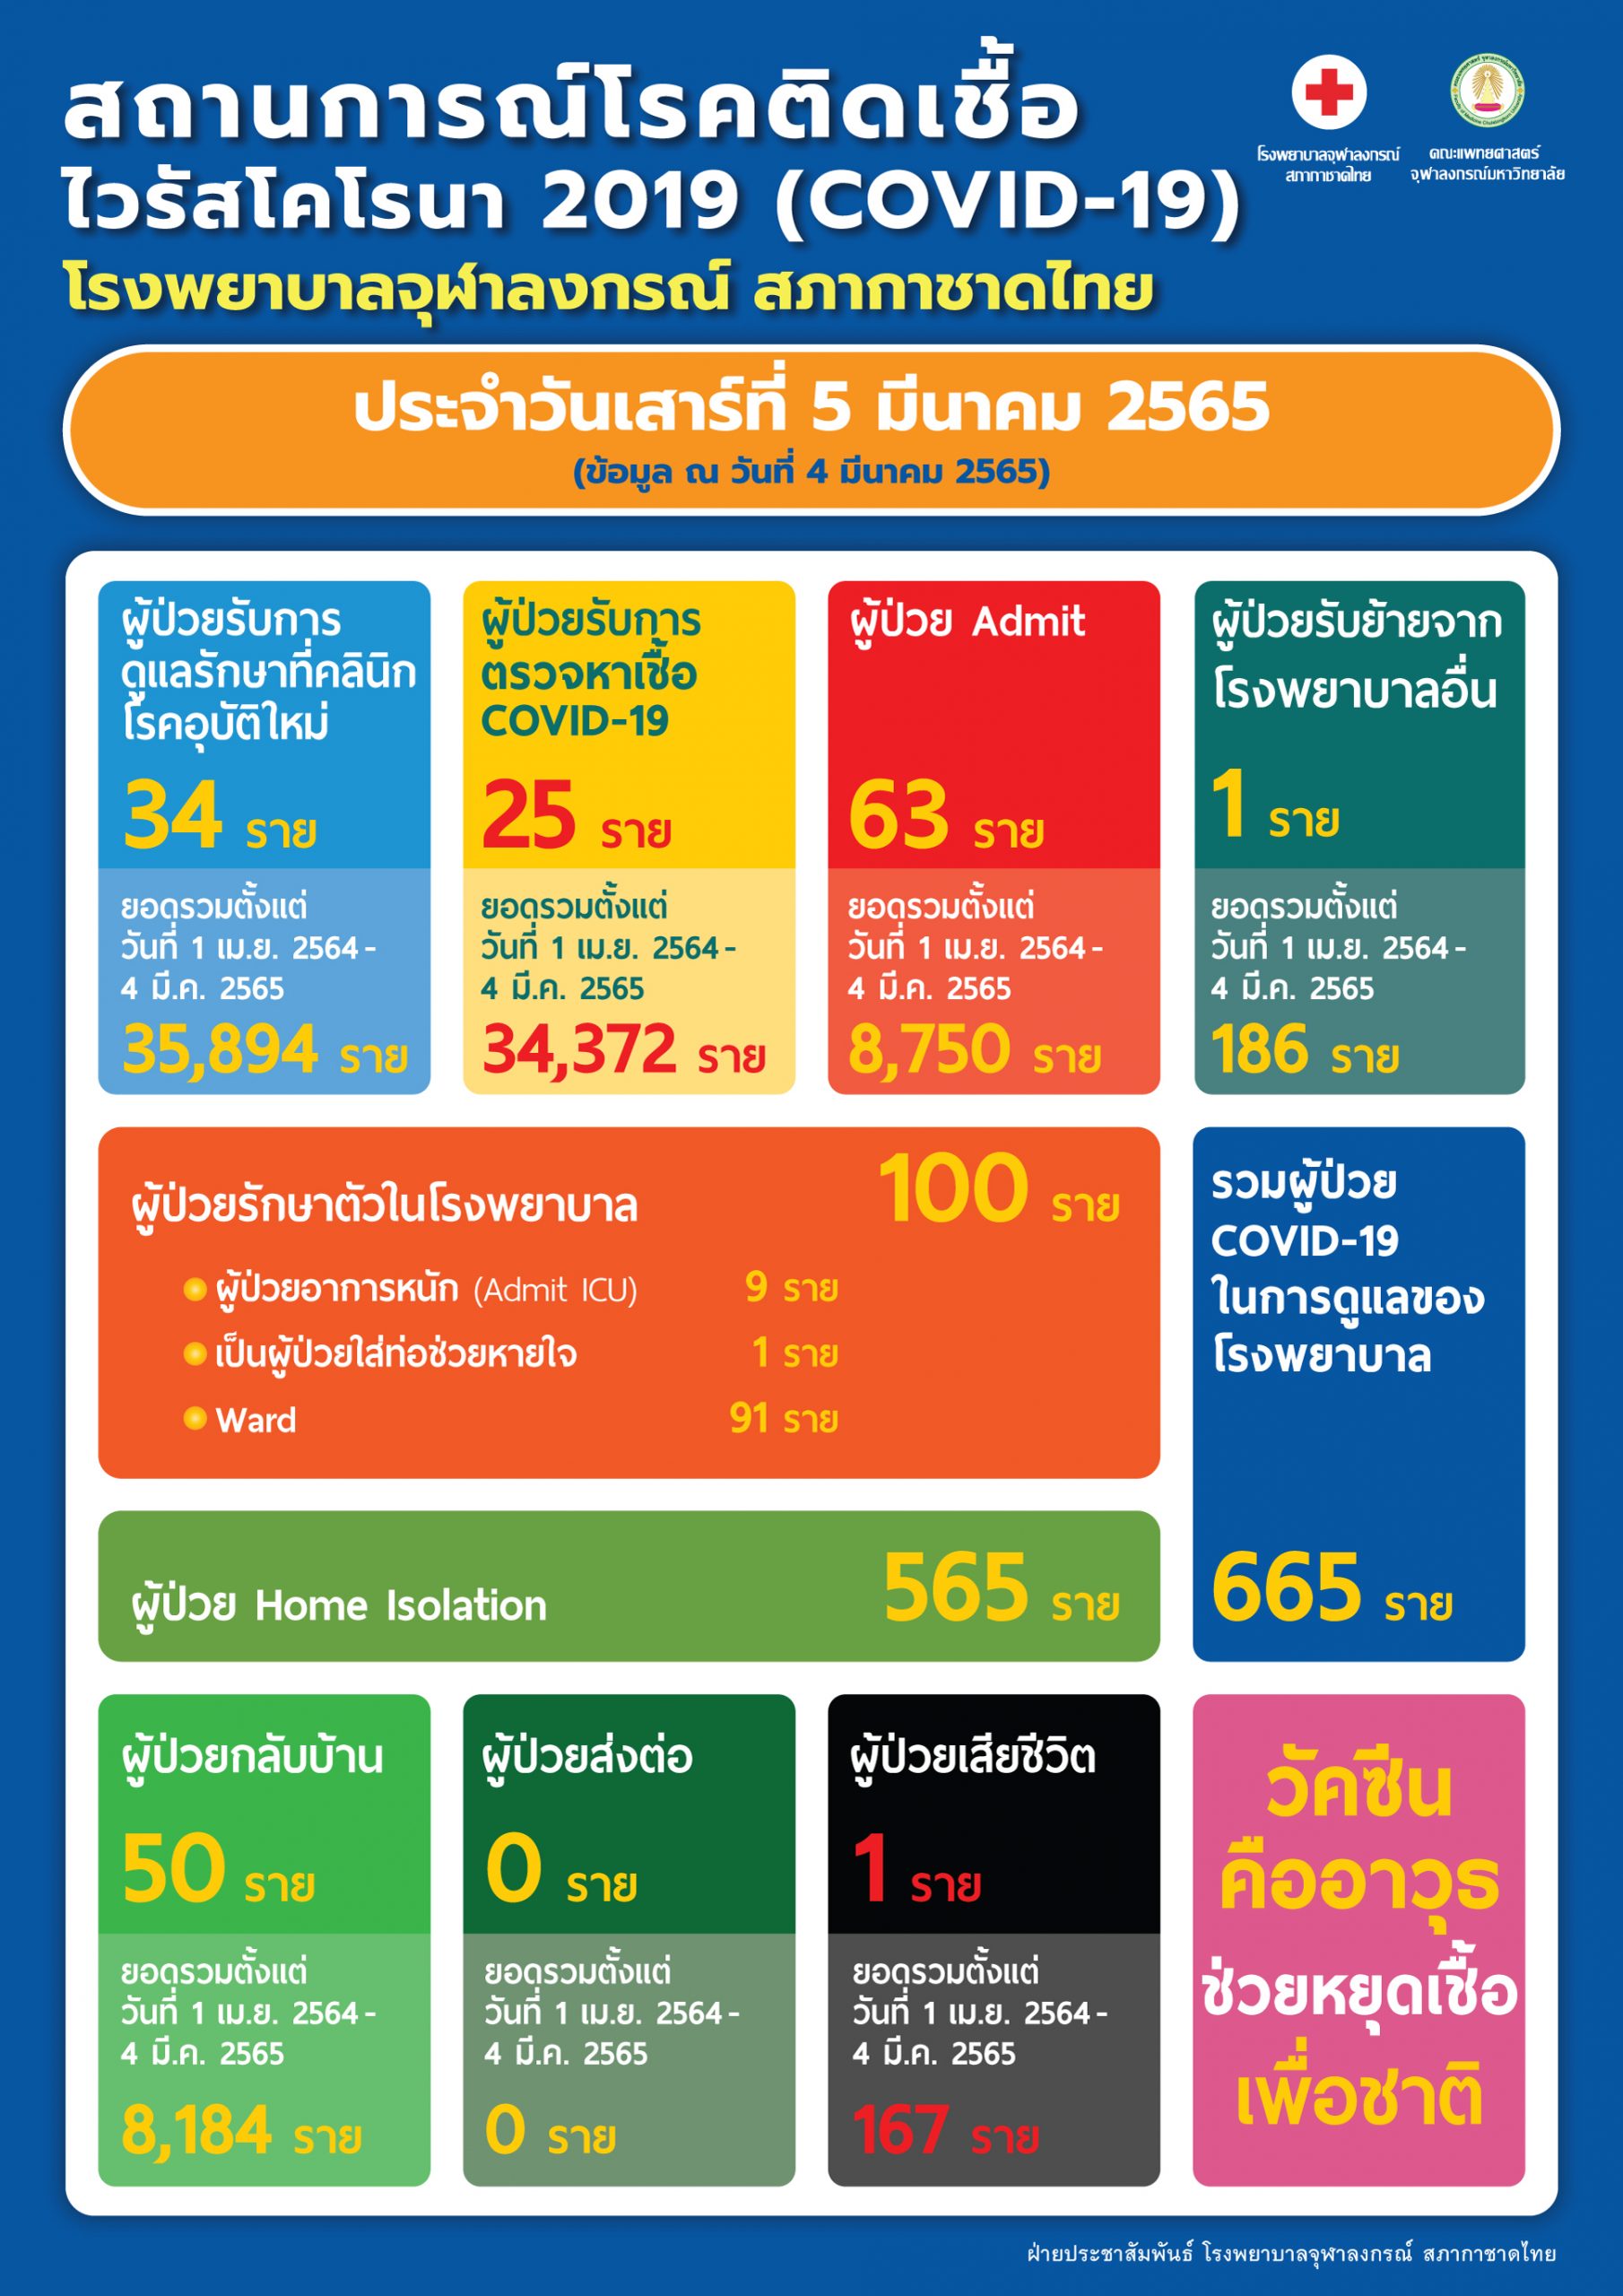 สถานการณ์โรคติดเชื้อไวรัสโคโรนา 2019 (COVID-19) โรงพยาบาลจุฬาลงกรณ์ สภากาชาดไทย ประจำวันเสาร์ที่ 5 มีนาคม 2565